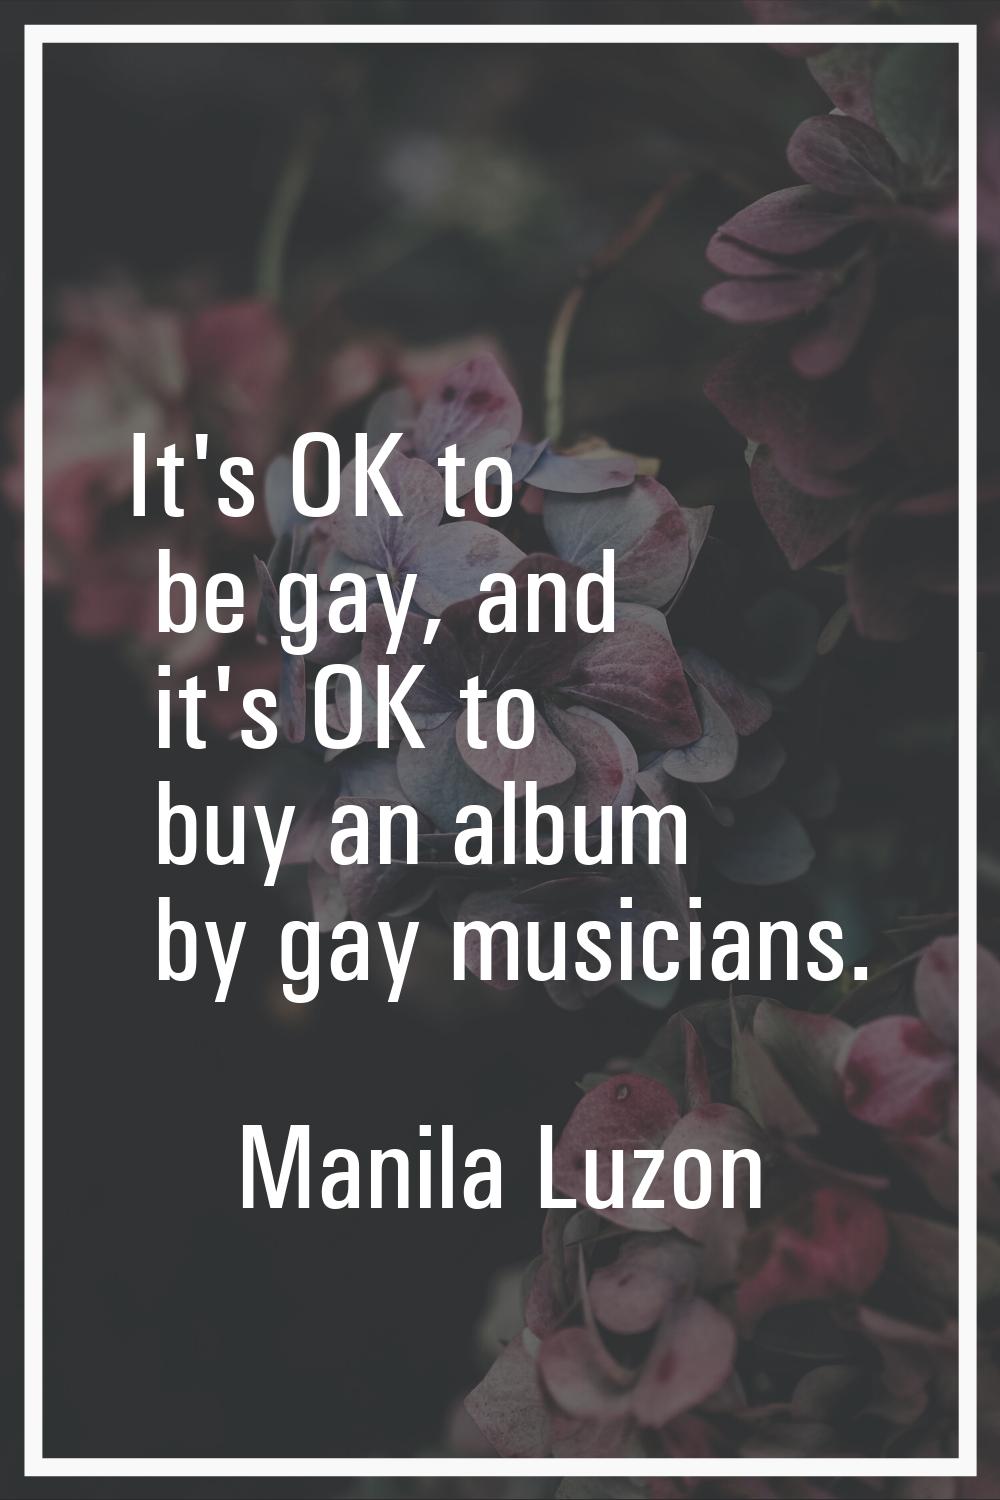 It's OK to be gay, and it's OK to buy an album by gay musicians.